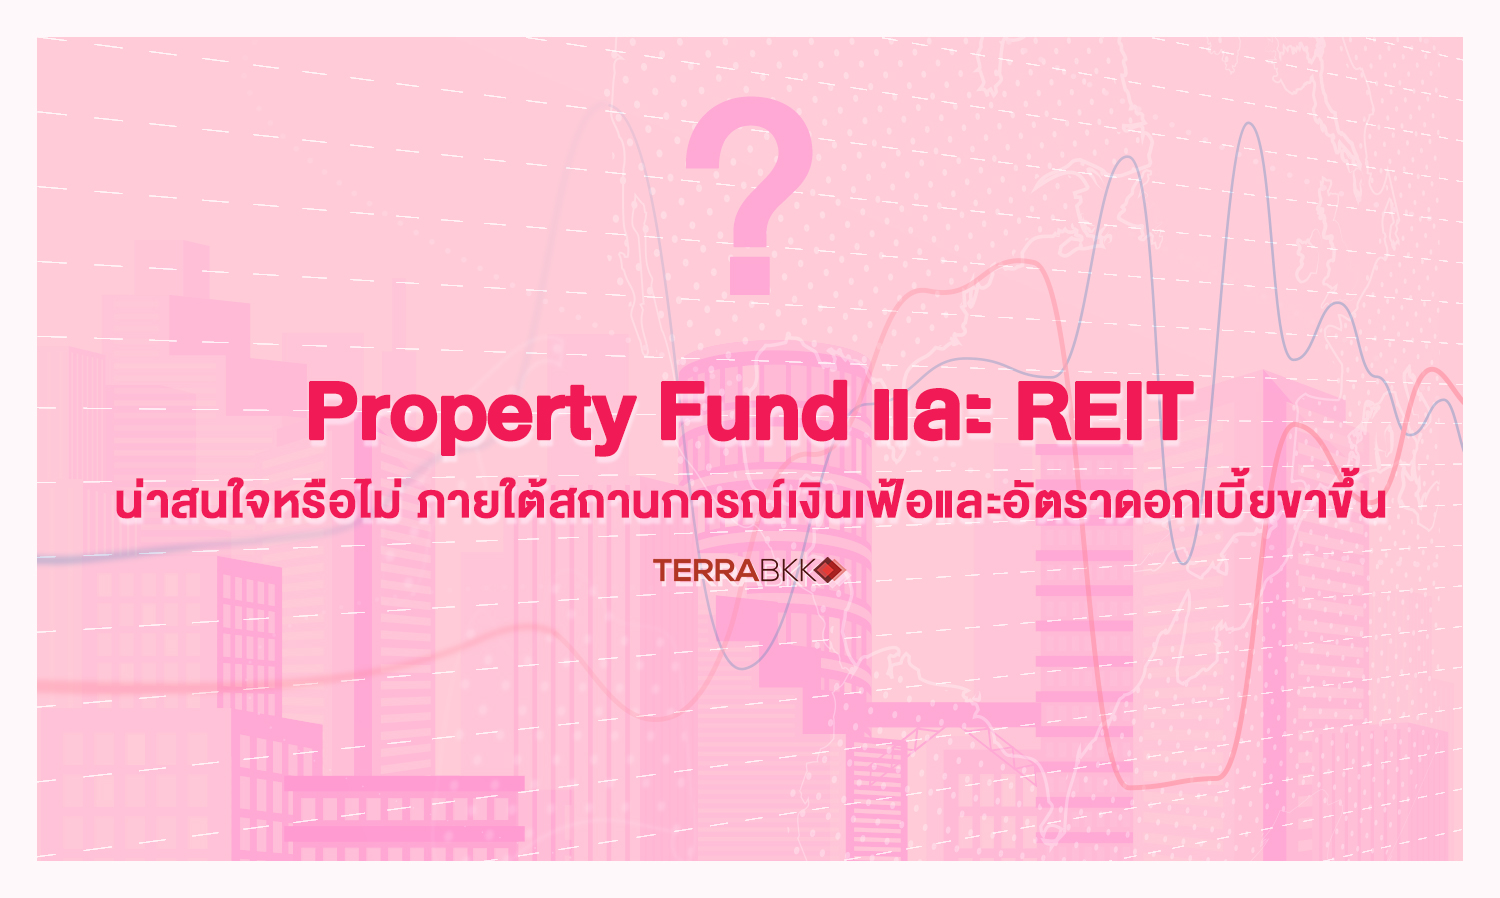 Property Fund และ REIT น่าสนใจหรือไม่ ภายใต้สถานการณ์เงินเฟ้อและอัตราดอกเบี้ยขาขึ้น